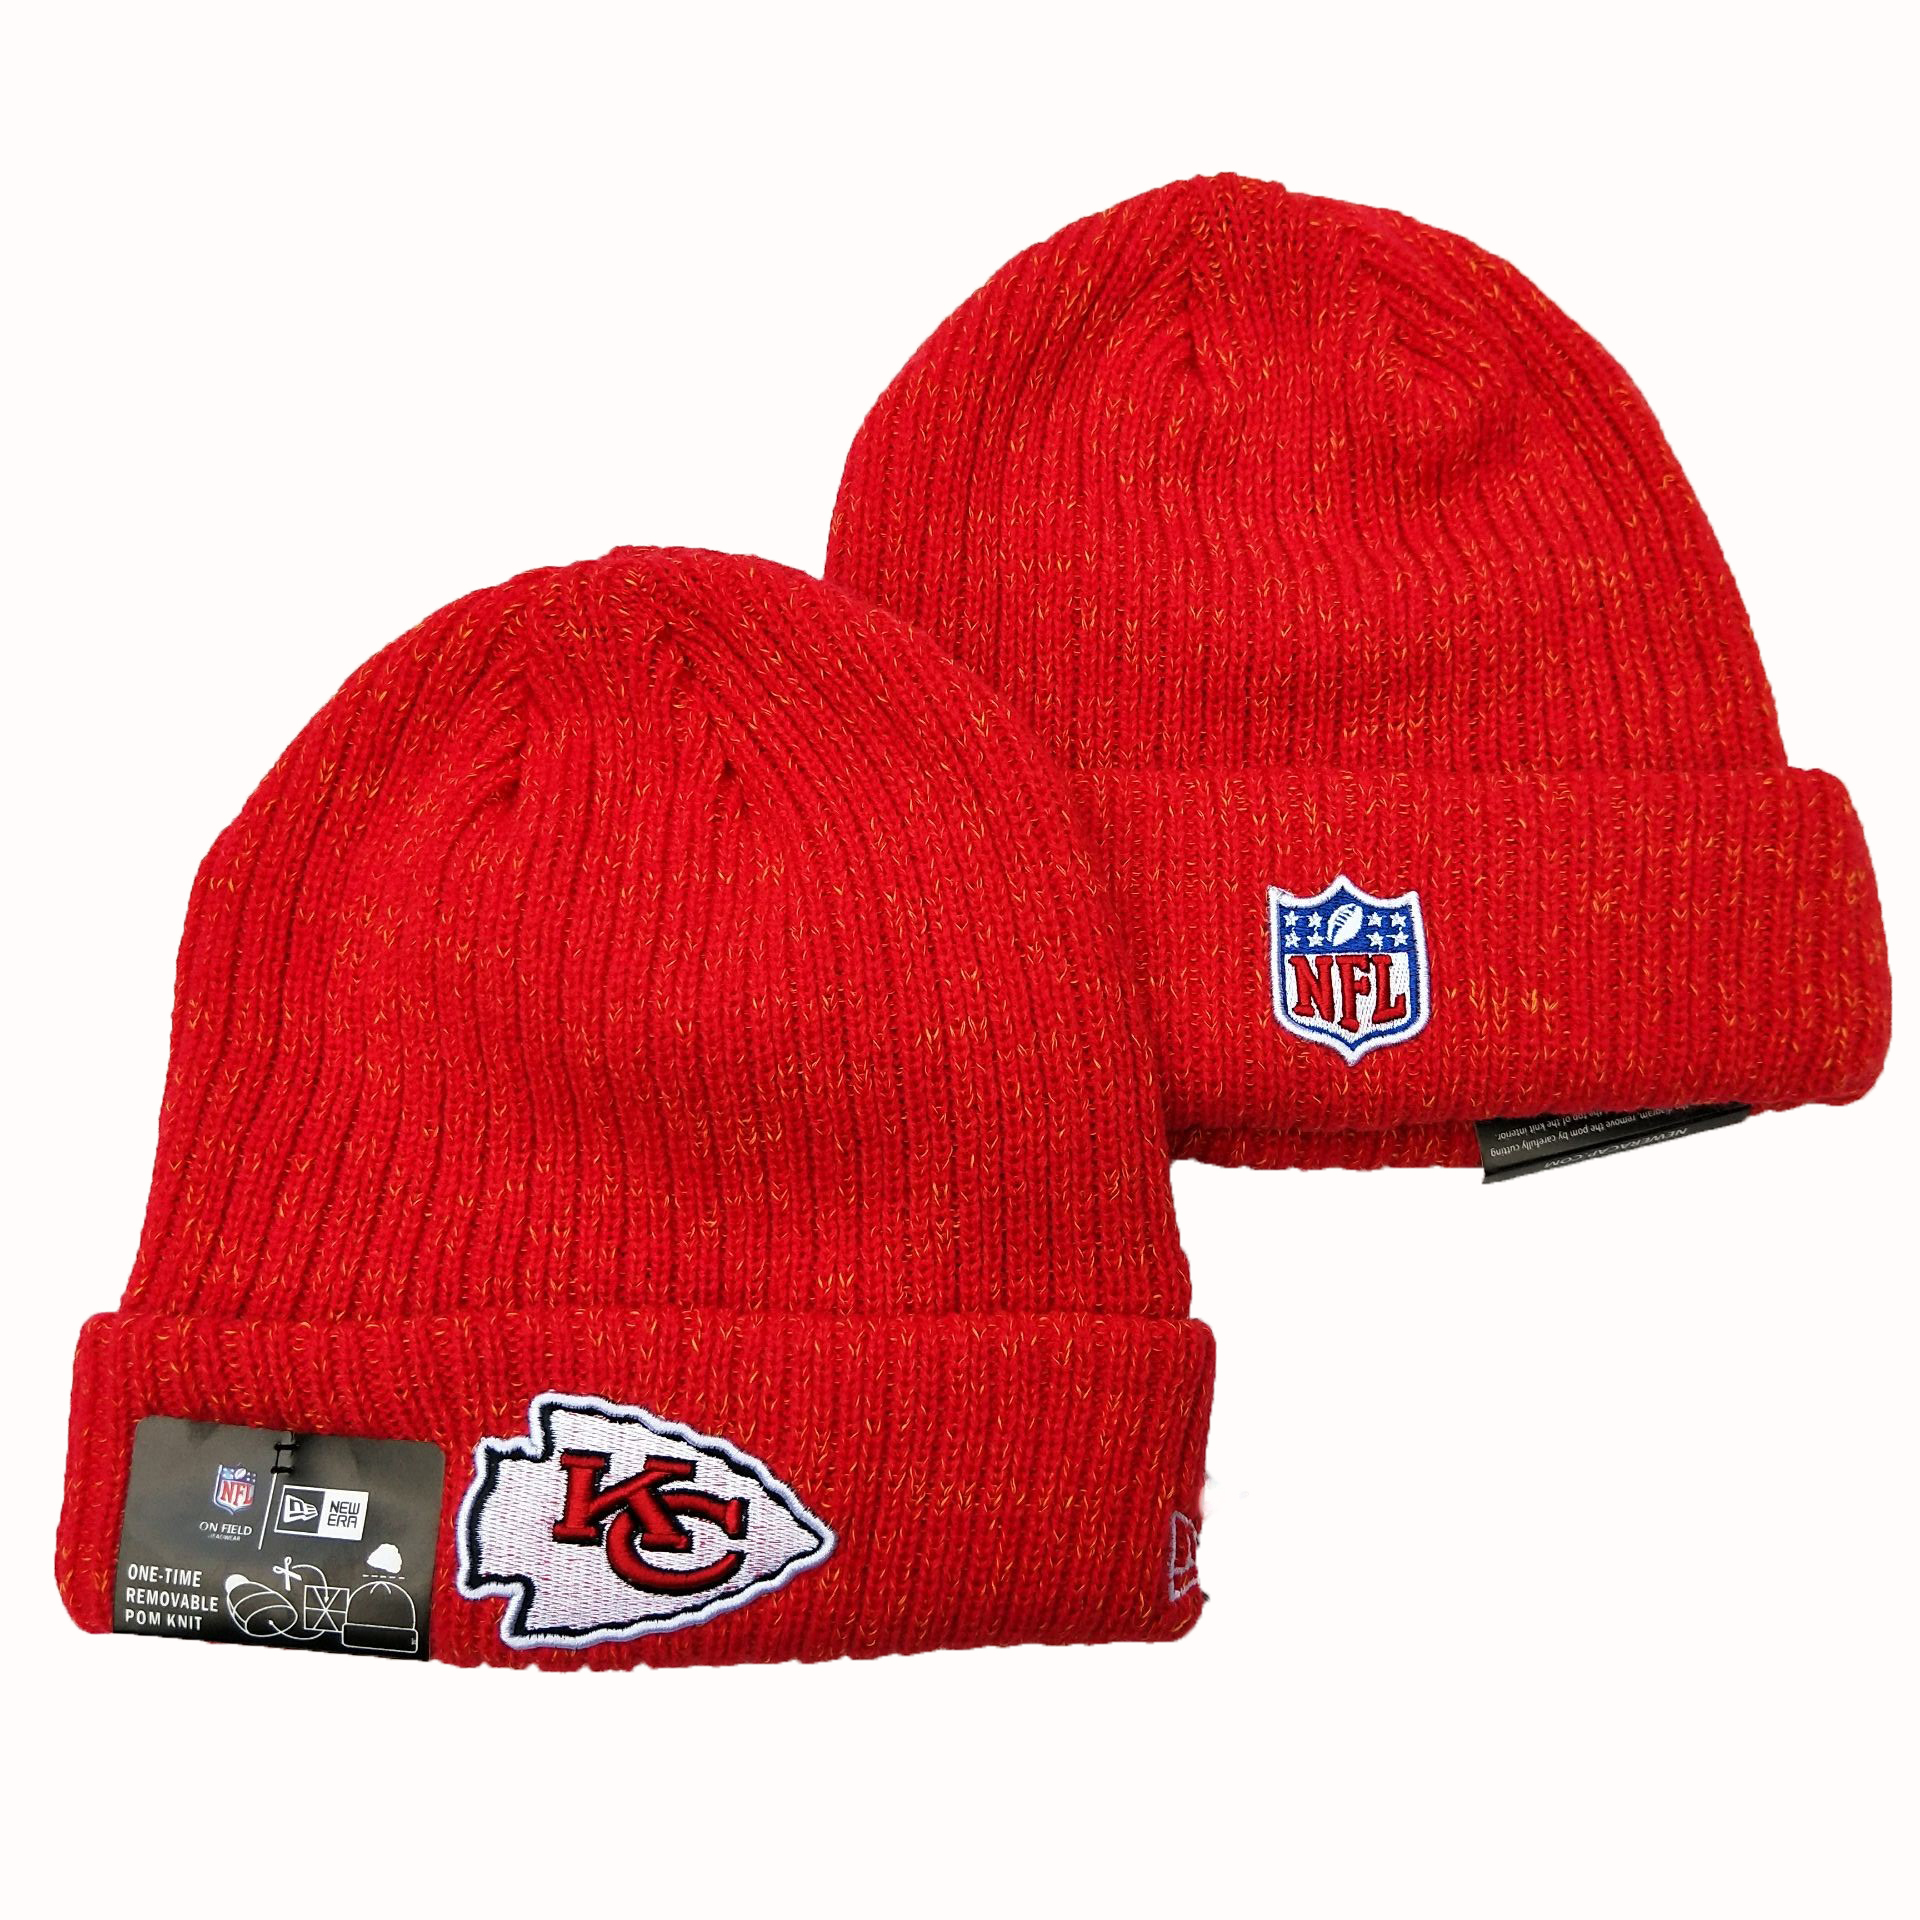 Chiefs Team Logo Red Cuffed Pom Knit Hat YD